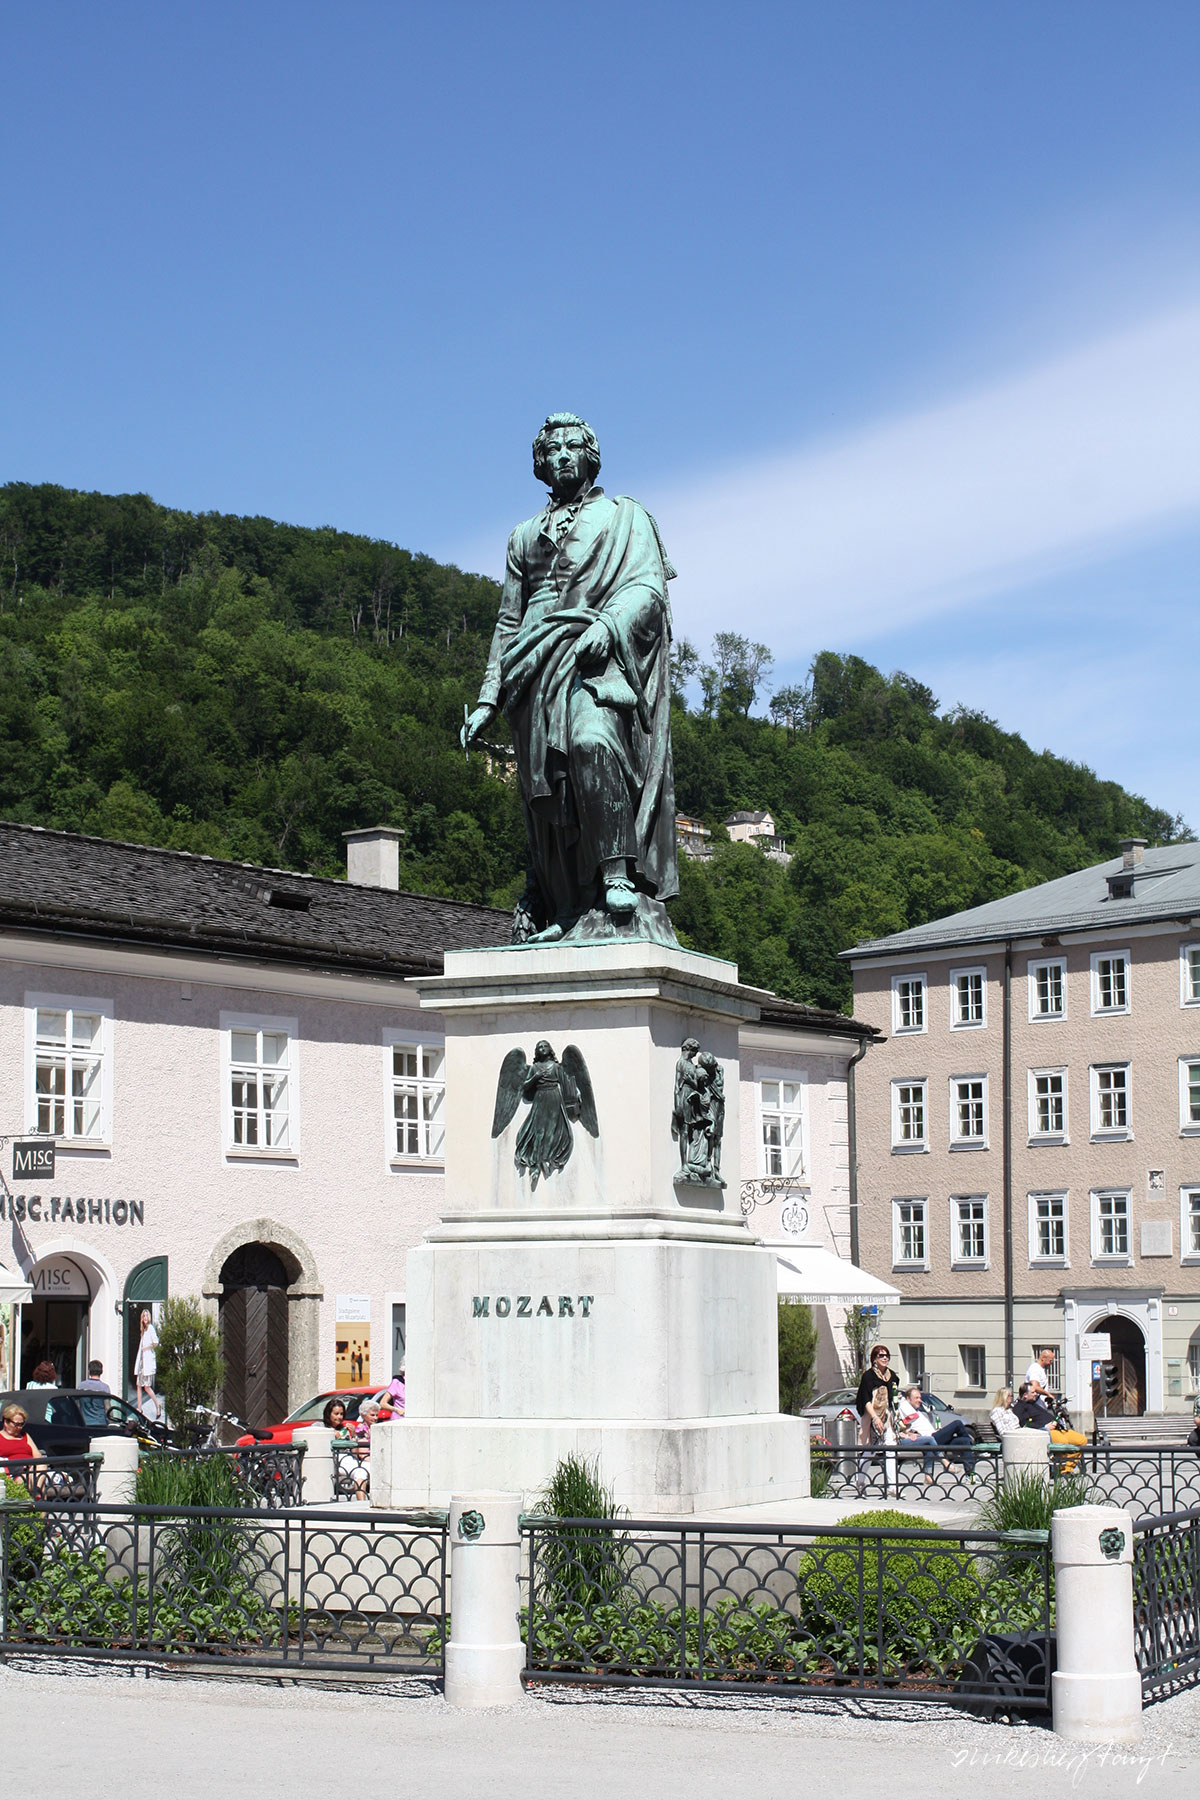 österreich, salzburg, #visitsalzburg, salzburger land, salzach, leichtsinn, #nikeunterwegs, travel, blog, nikesherztanzt